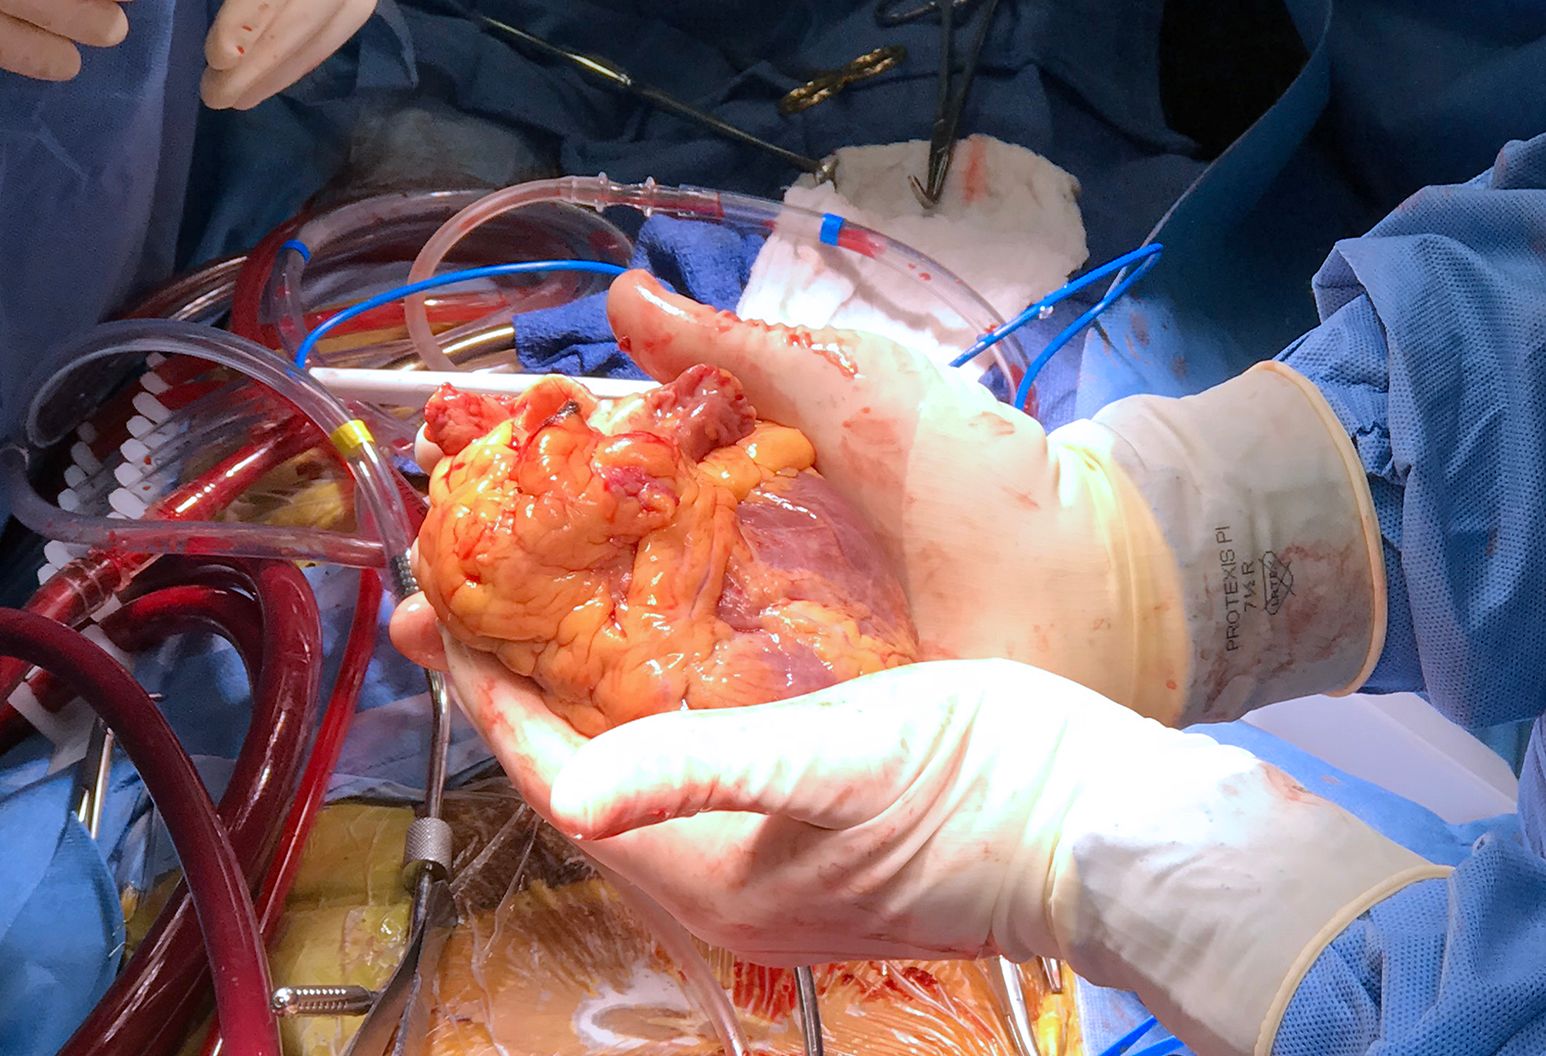 قلب‌های مصنوعی چاپی در بدن بیمار پس نمی‌زند / کوتاه شدن صف پیوند اعضا